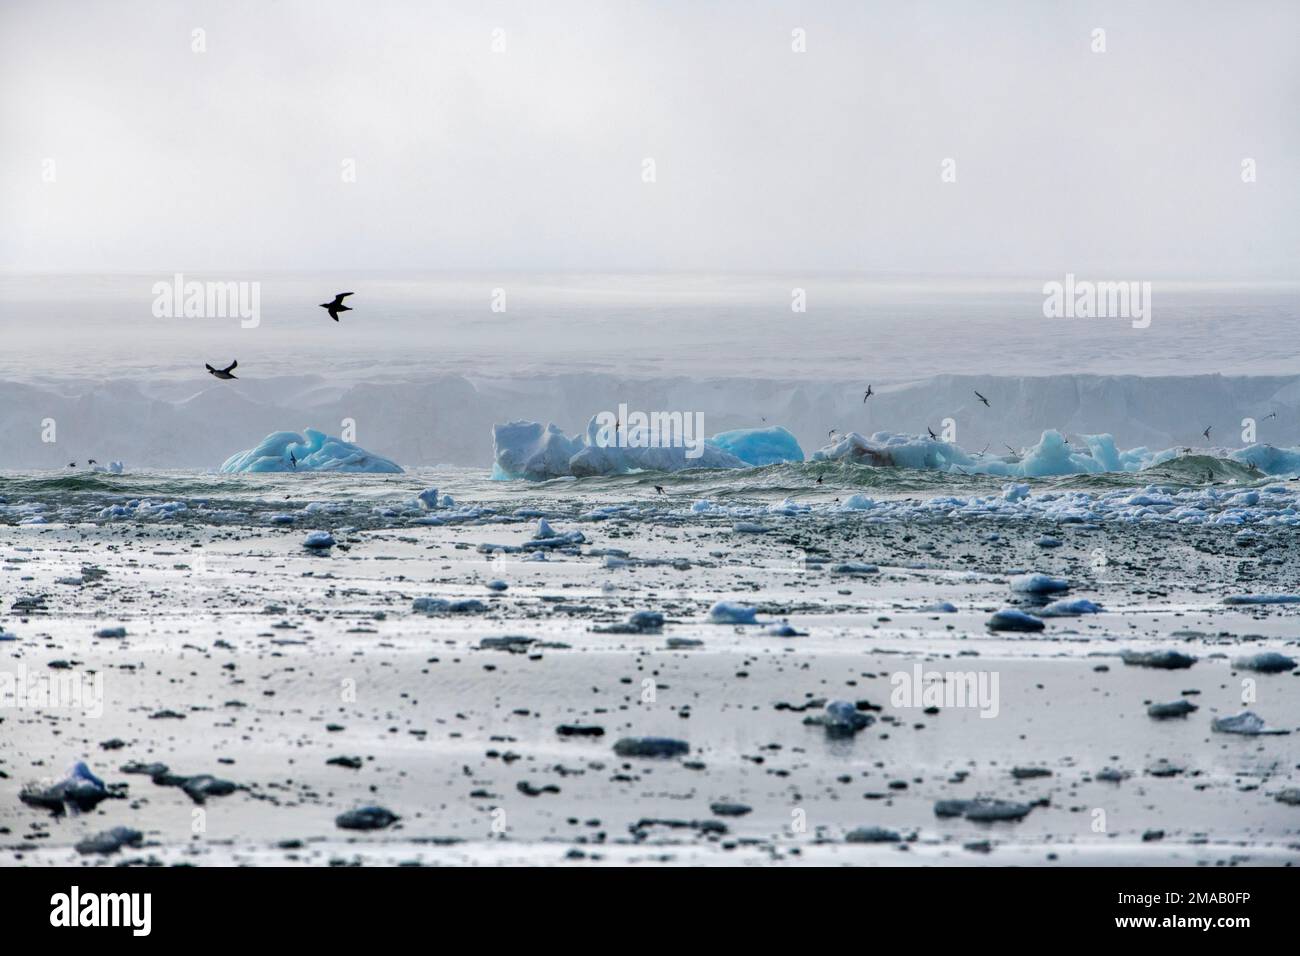 Oiseaux polaires volant près de Storoya, Svalbard. Expédition navire de croisière Greg Mortimer dans l'archipel de Svalbard, dans l'Arctique de la Norvège. Storøya est une île de Th Banque D'Images